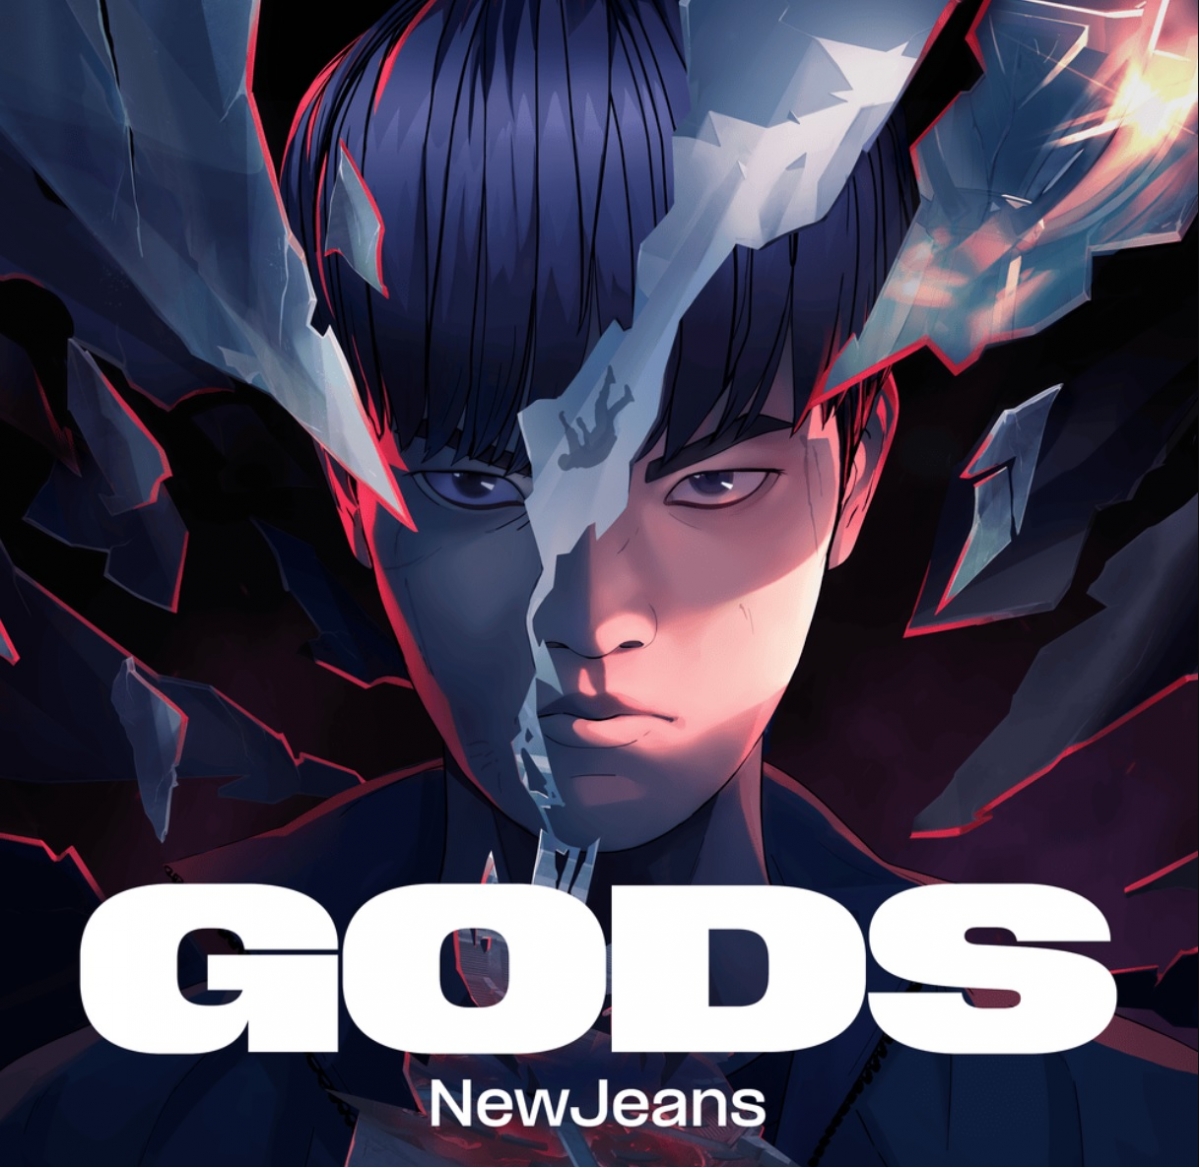 GODS - Ca khúc chính thức của giải thể thao điện tử có quy mô tổ chức vô cùng lớn tại Hàn Quốc